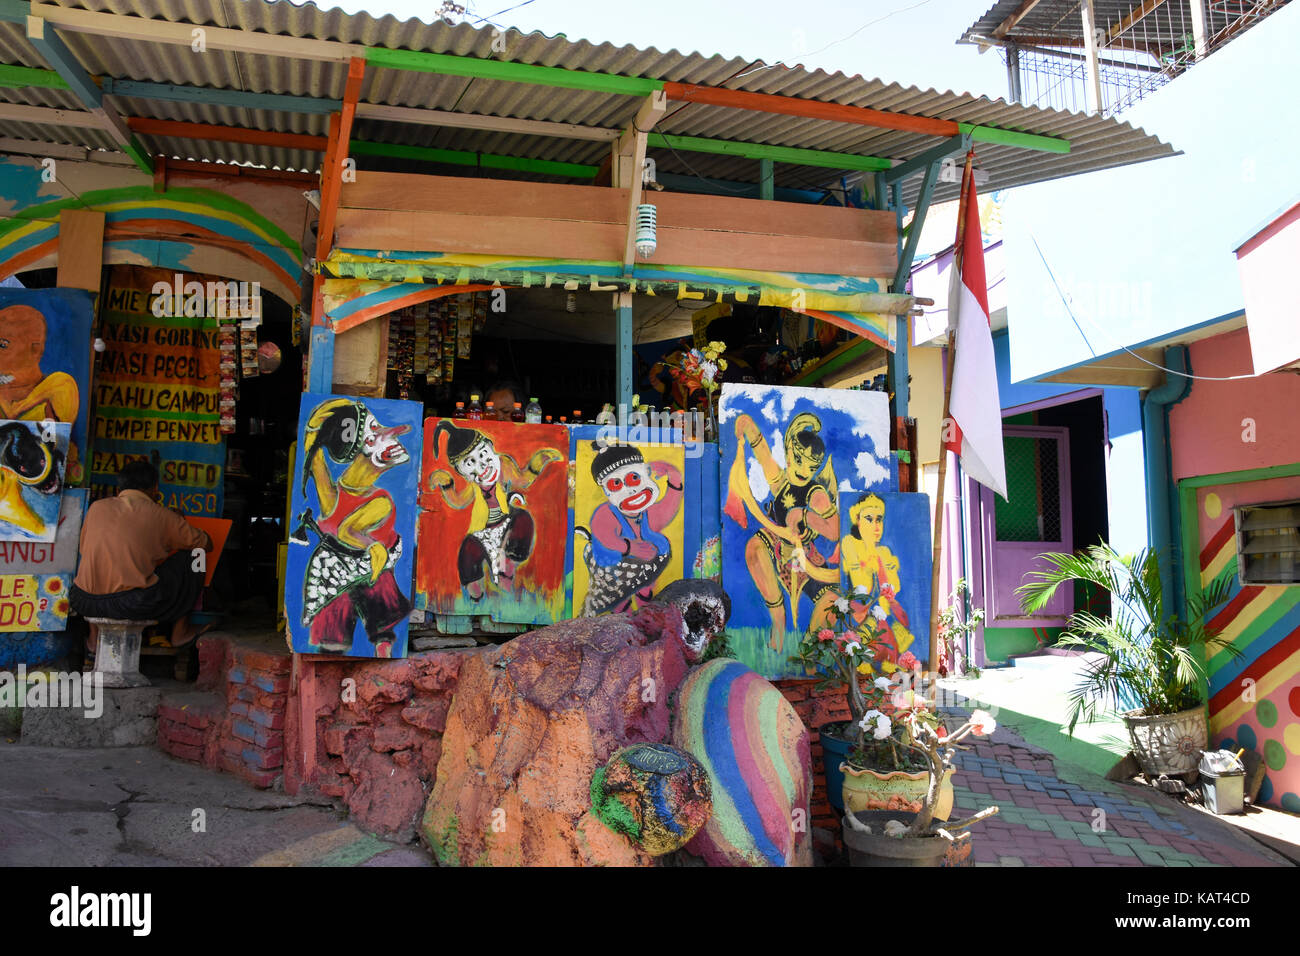 Affichage peinture au rainbow village de Semerang, Indonésie Banque D'Images